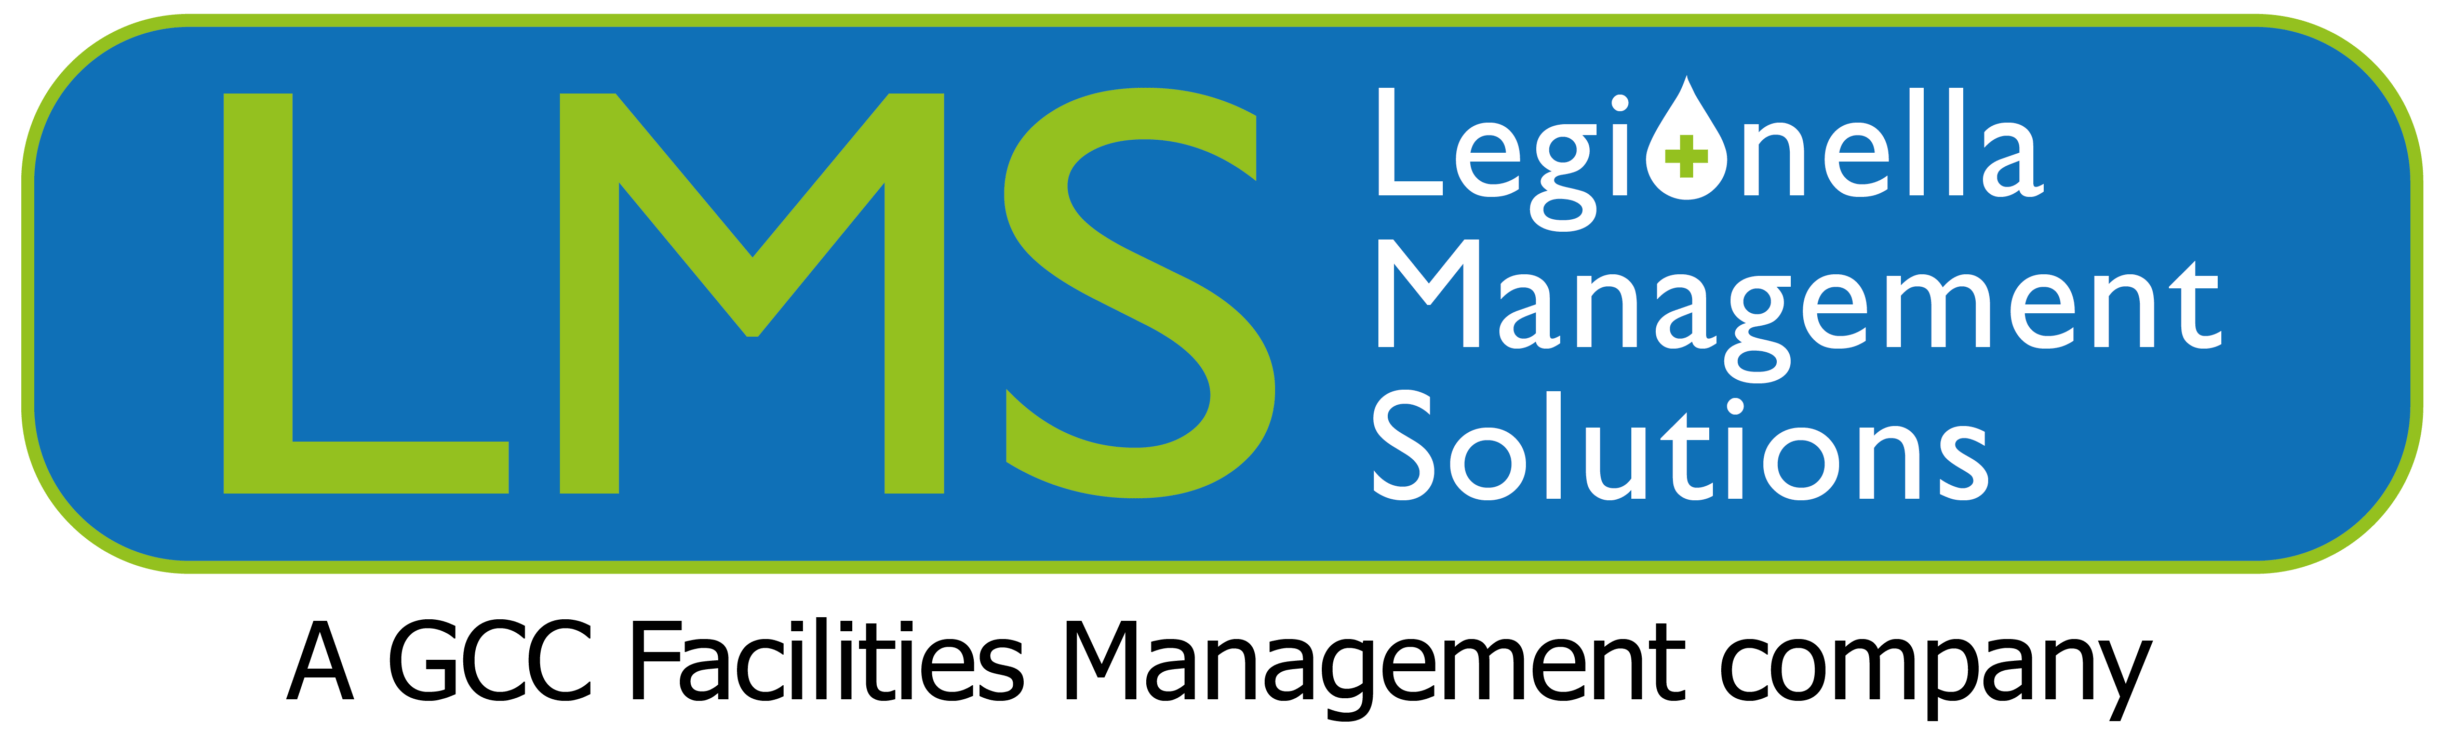 Legionella Management Solutions Logo